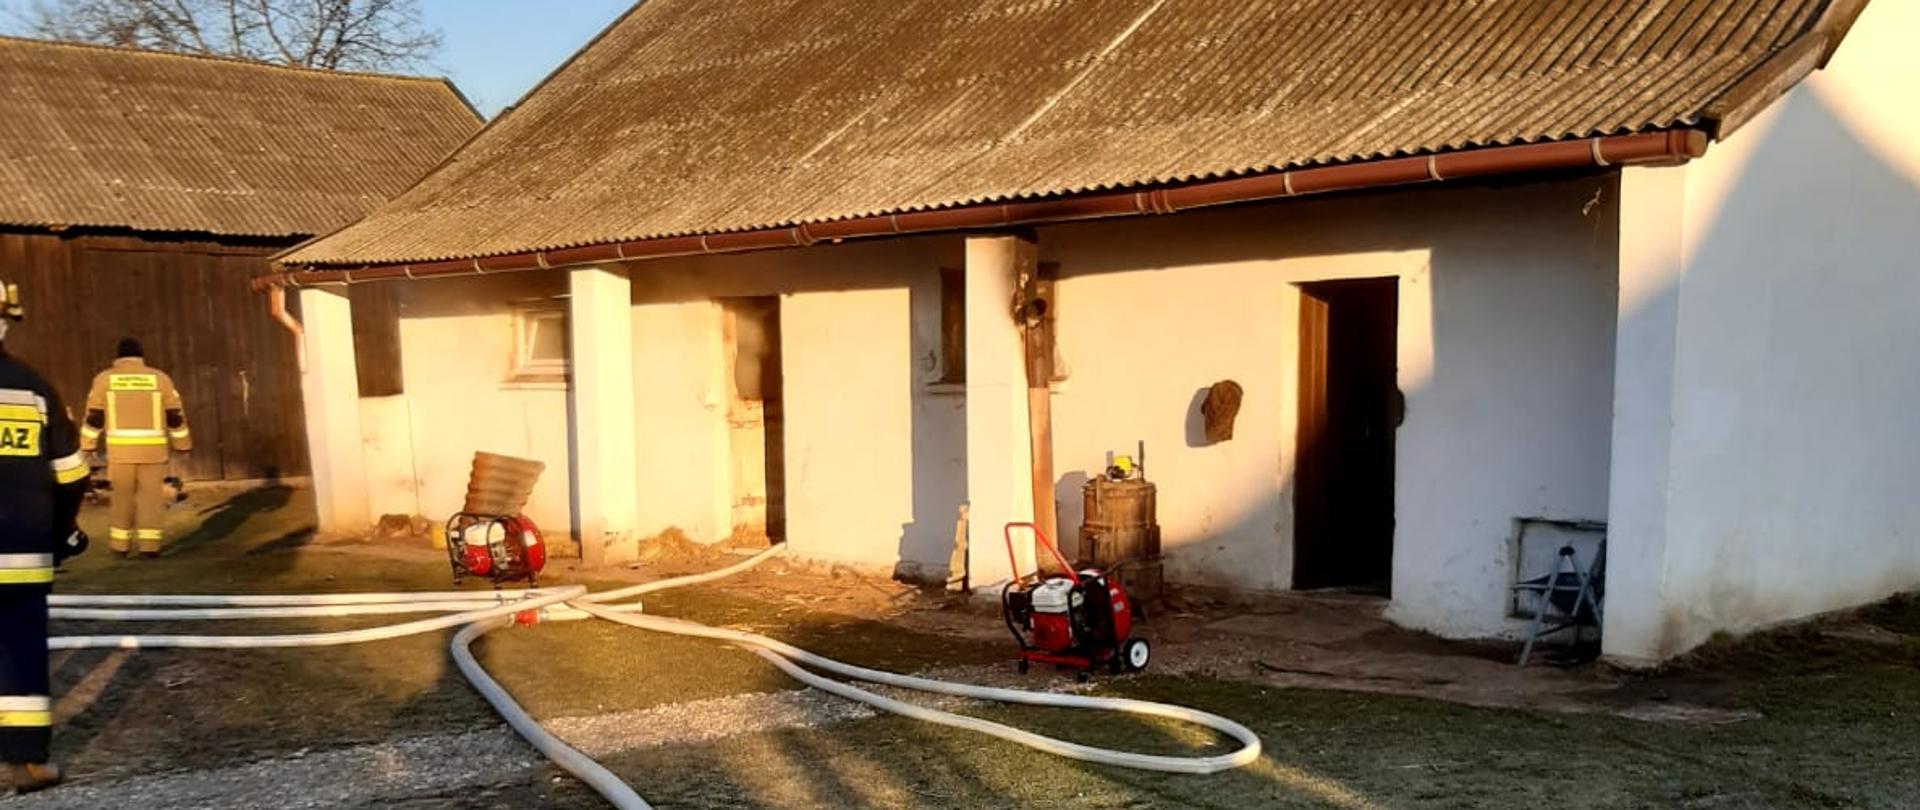 1. Pożar budynku inwentarskiego w miejscowości Dalechowice – prowadzone działania gaśnicze oraz oddymianie budynku